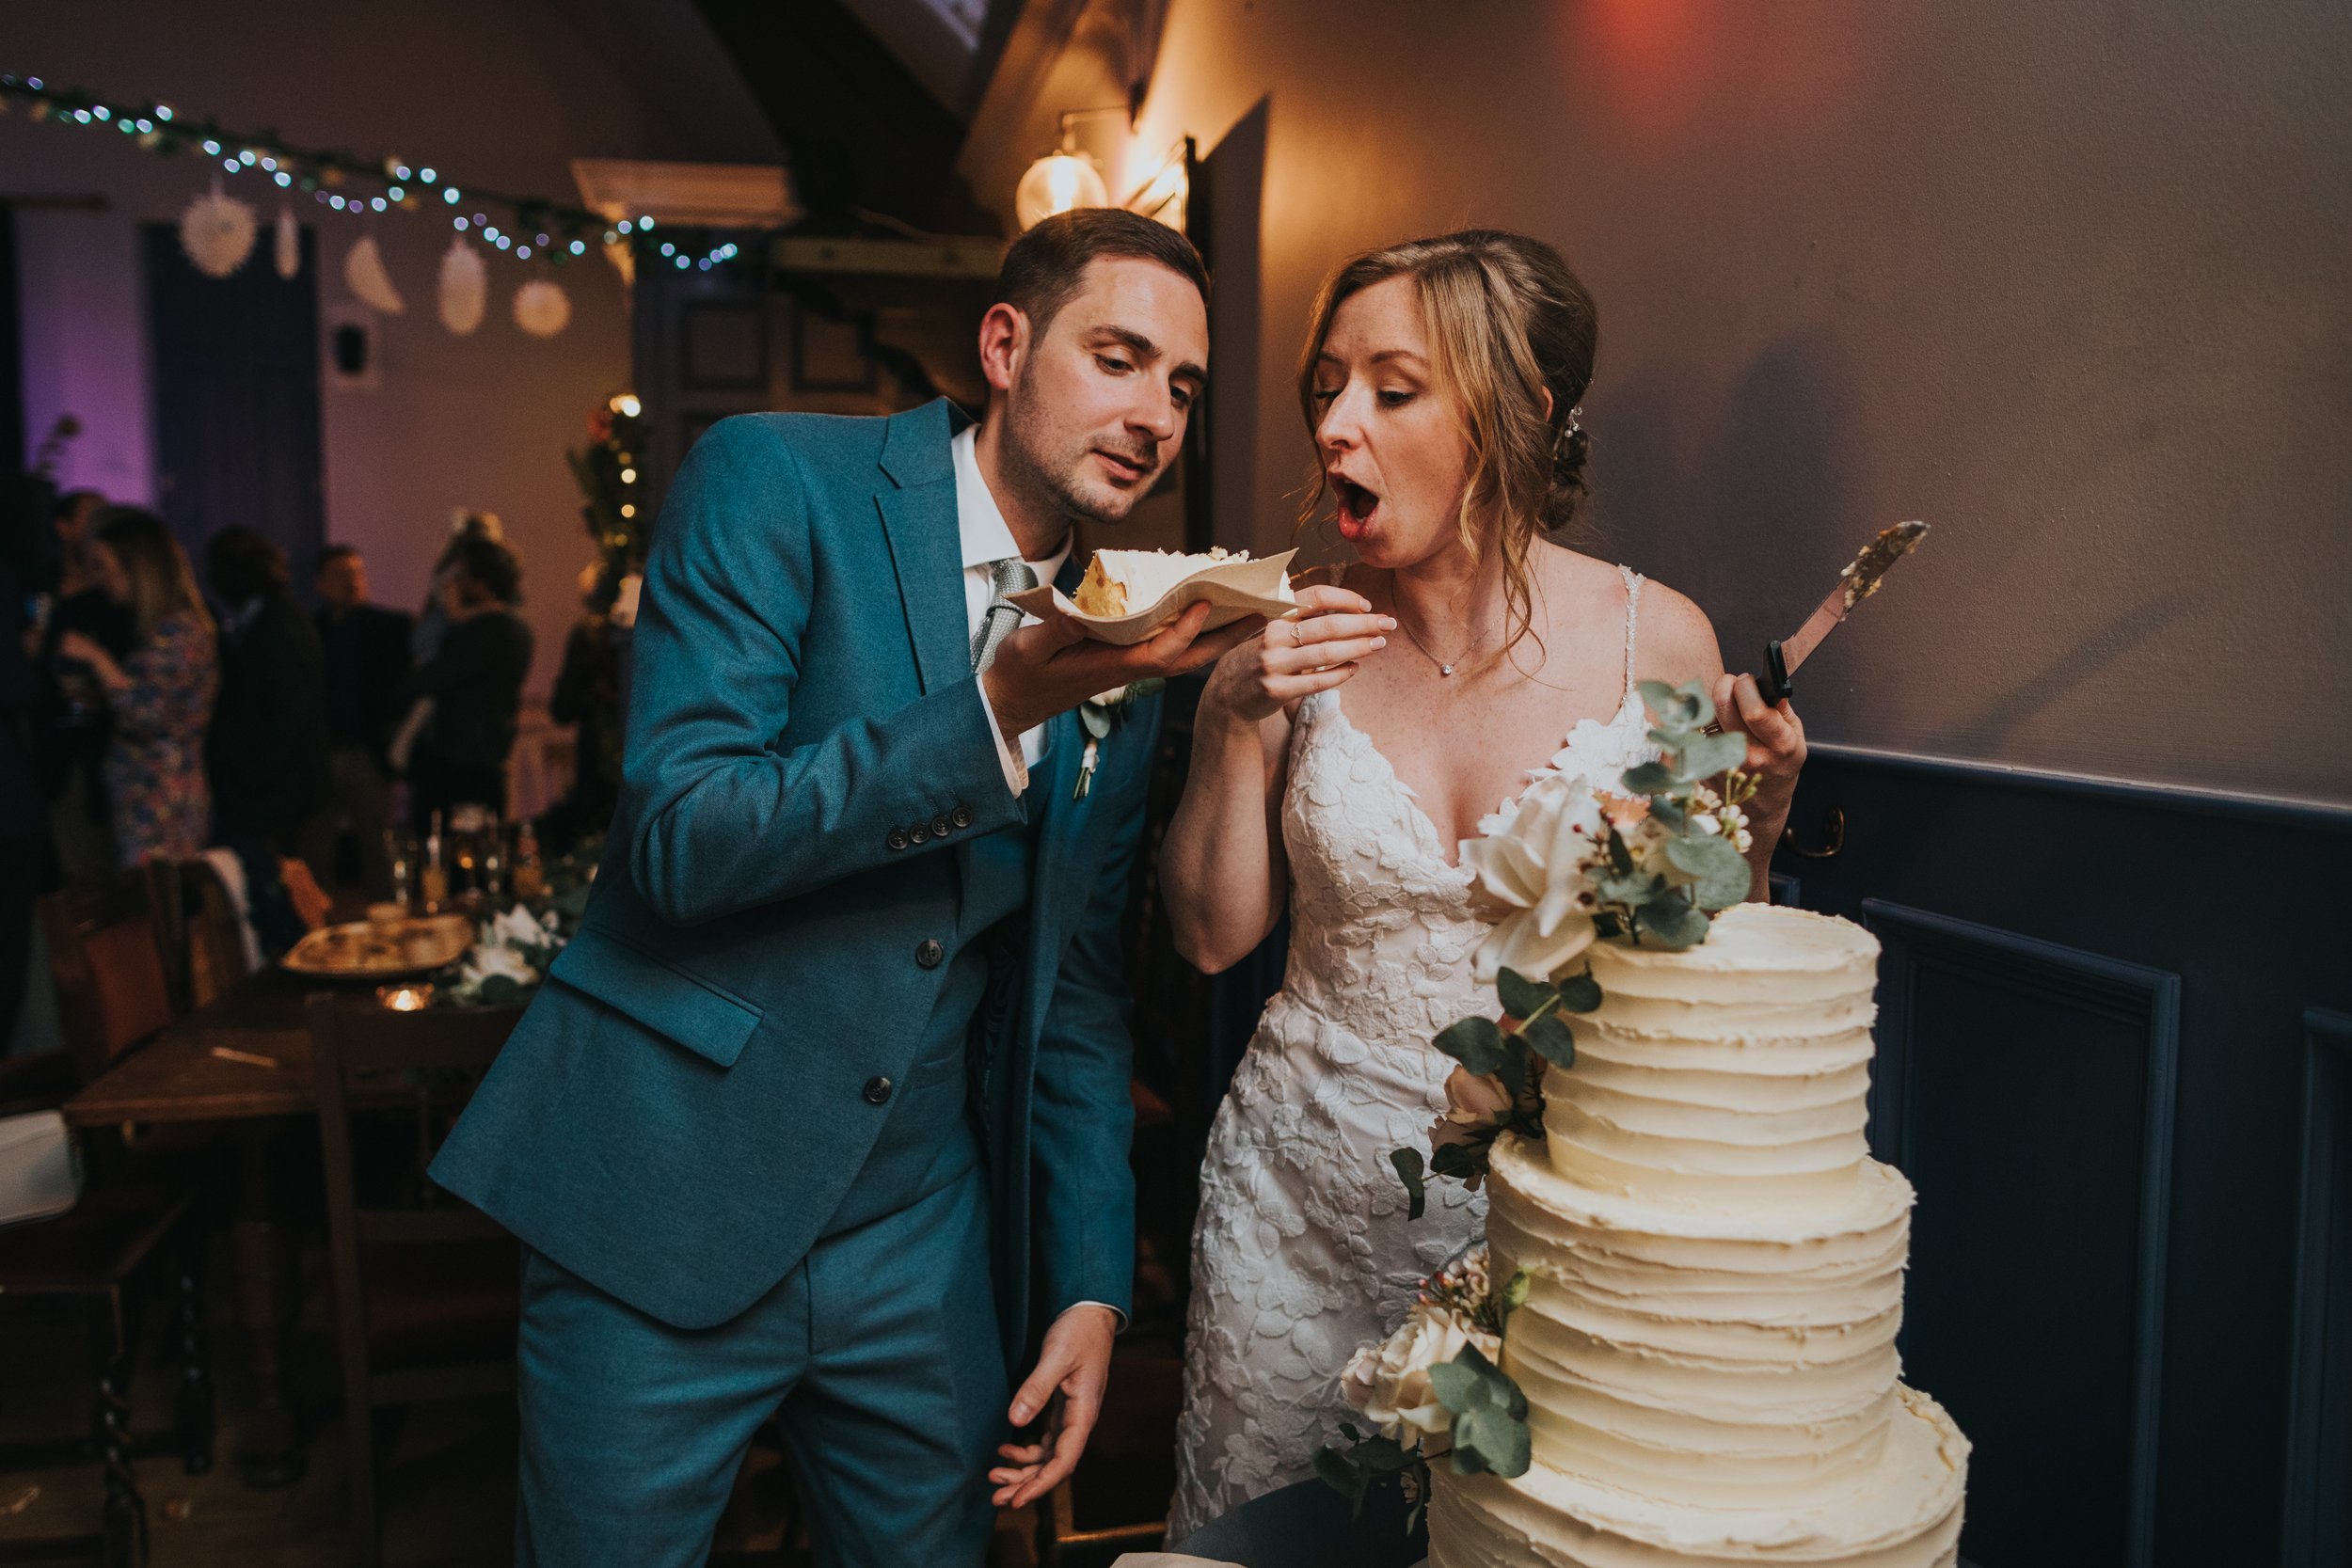 Couple enjoy wedding cake.